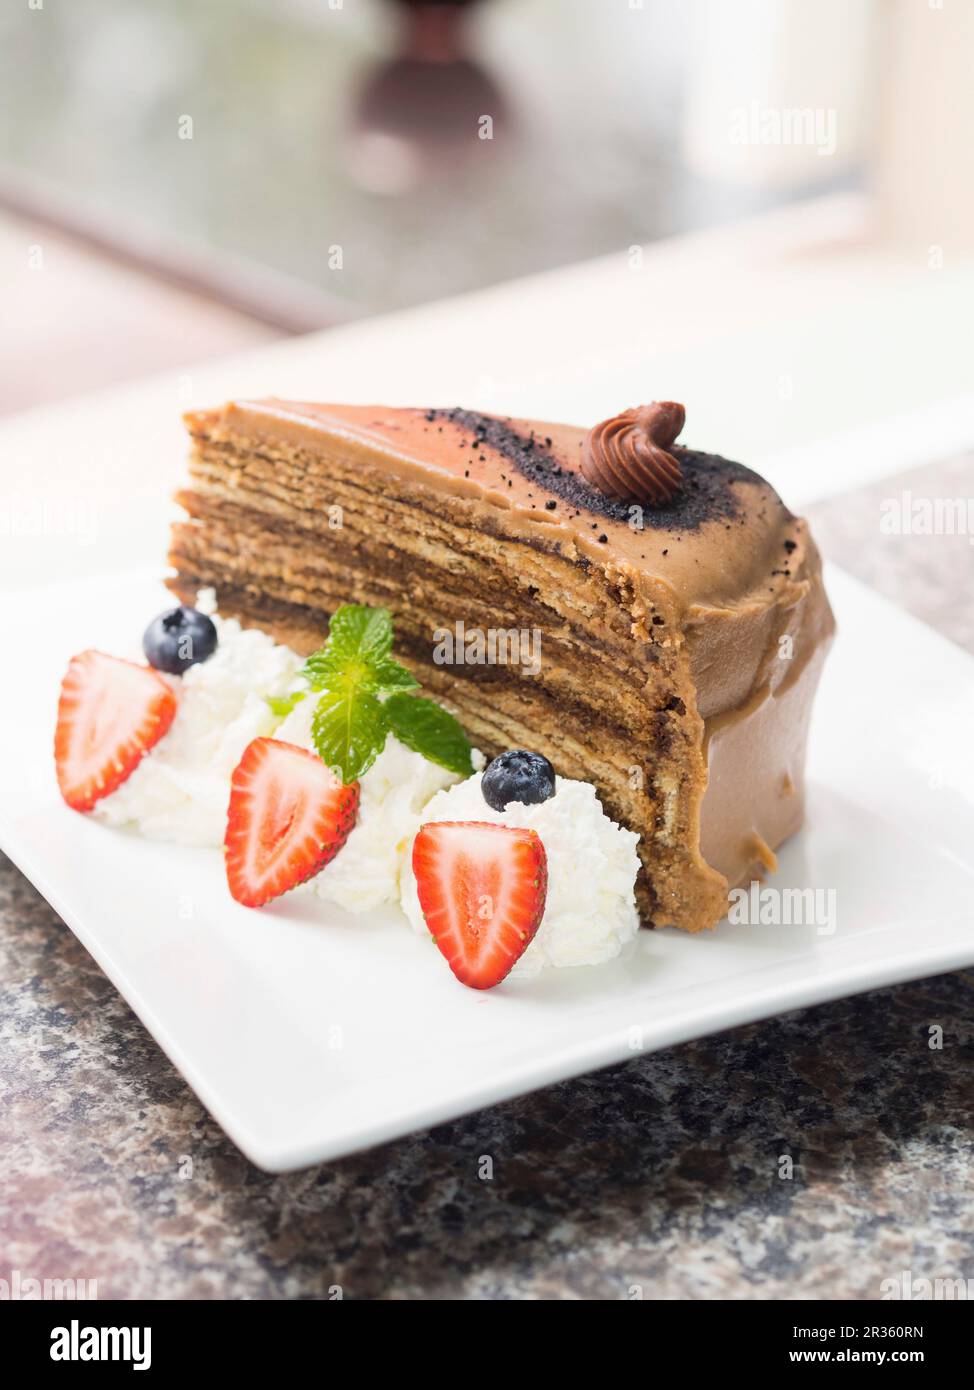 Una fetta di torta al cioccolato tiramisù servita con panna montata e frutti di bosco Foto Stock